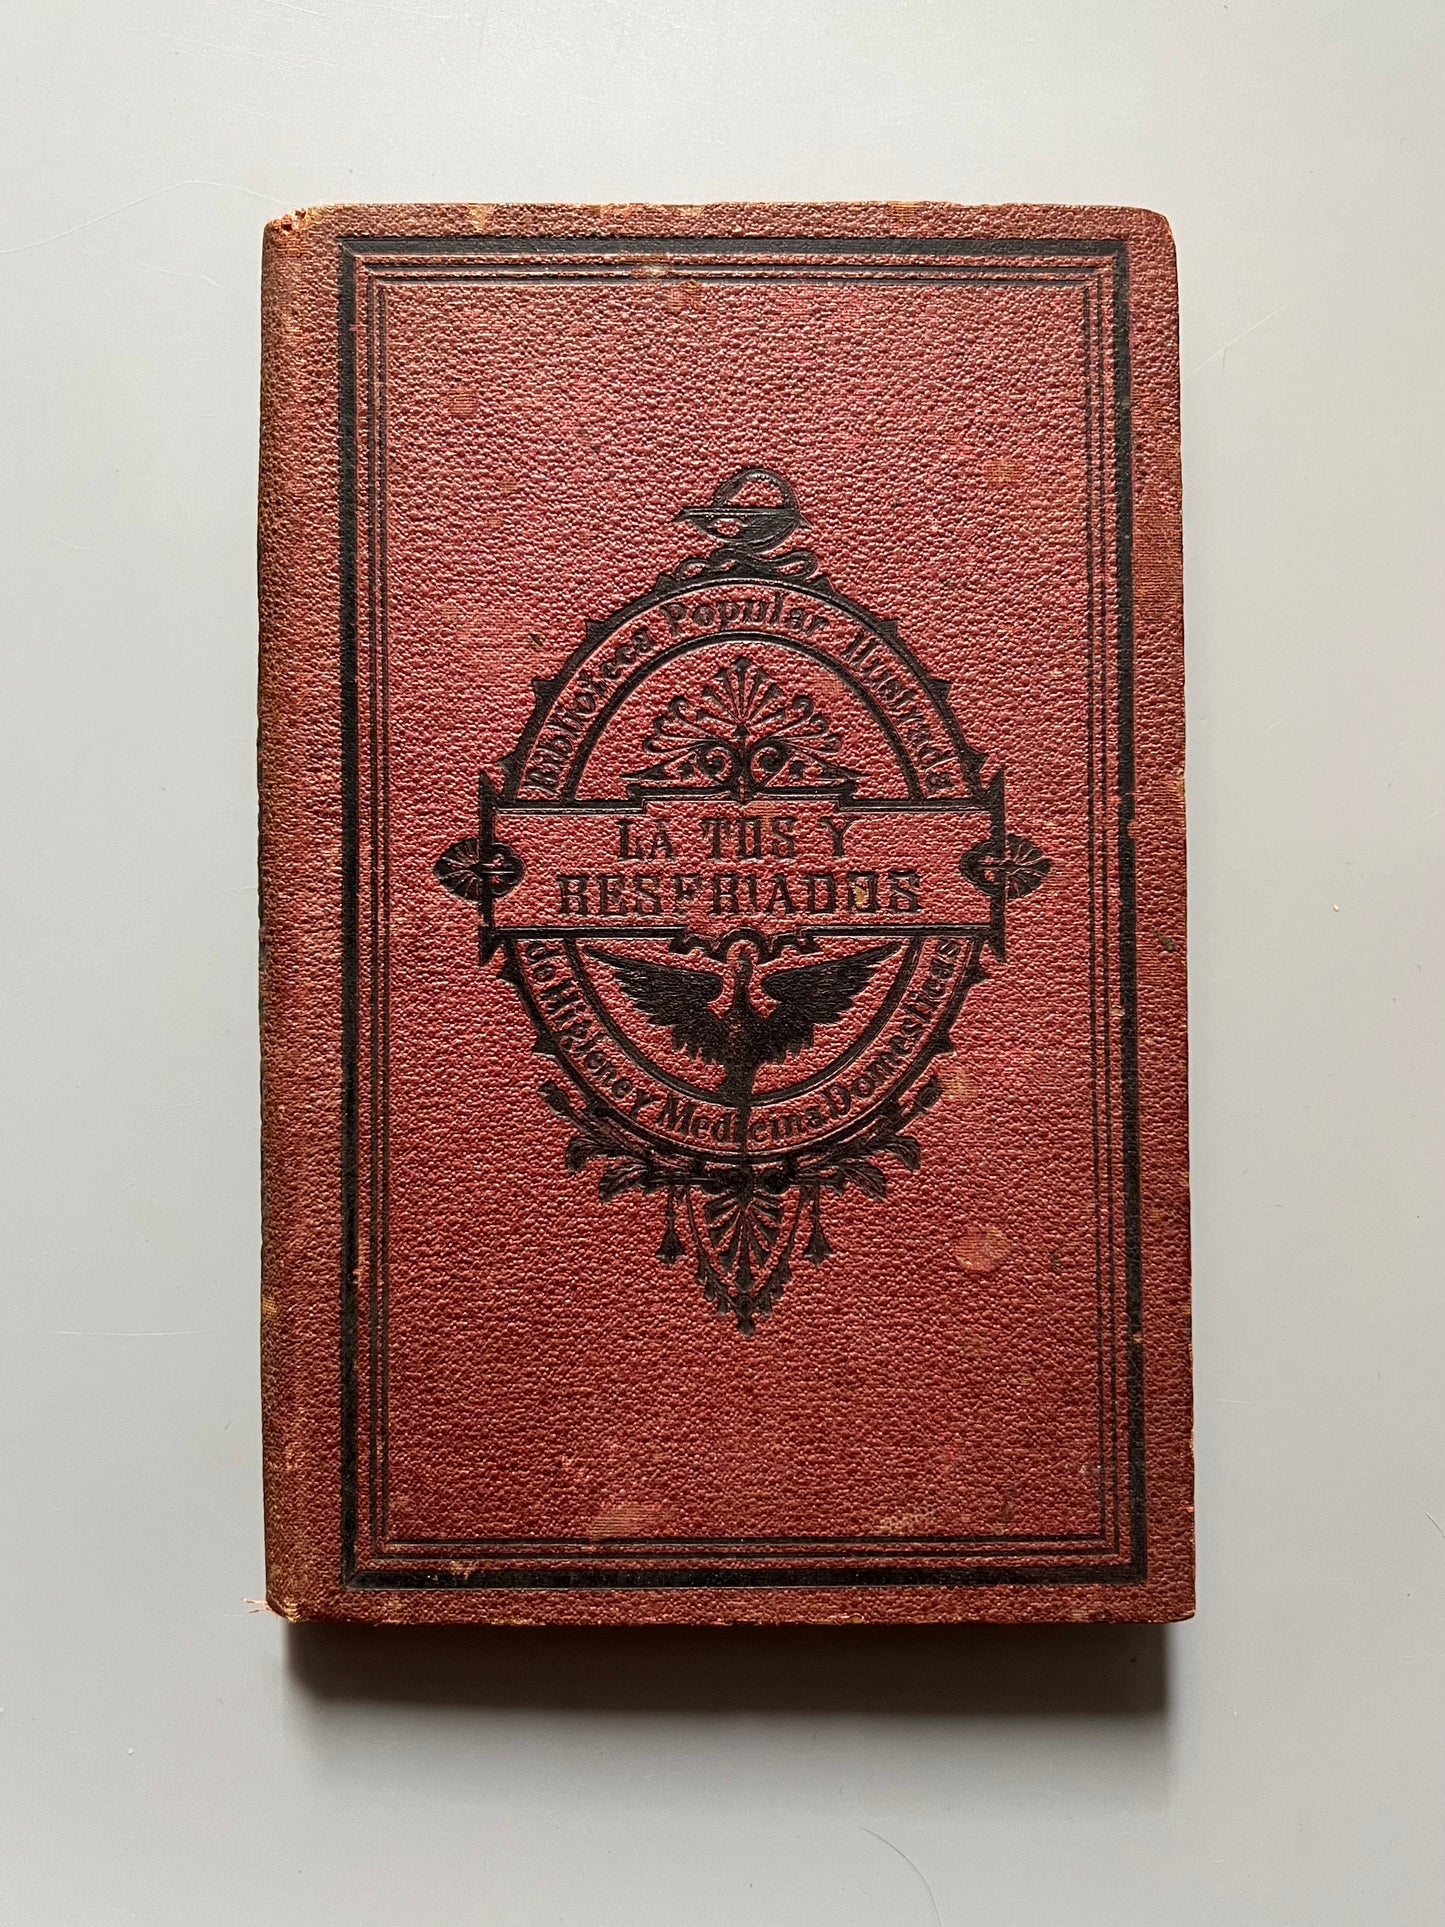 La tos y los resfriados, Dr. Pablo Niemeyer - Imprenta y Librería Religiosa y Científica, 1879